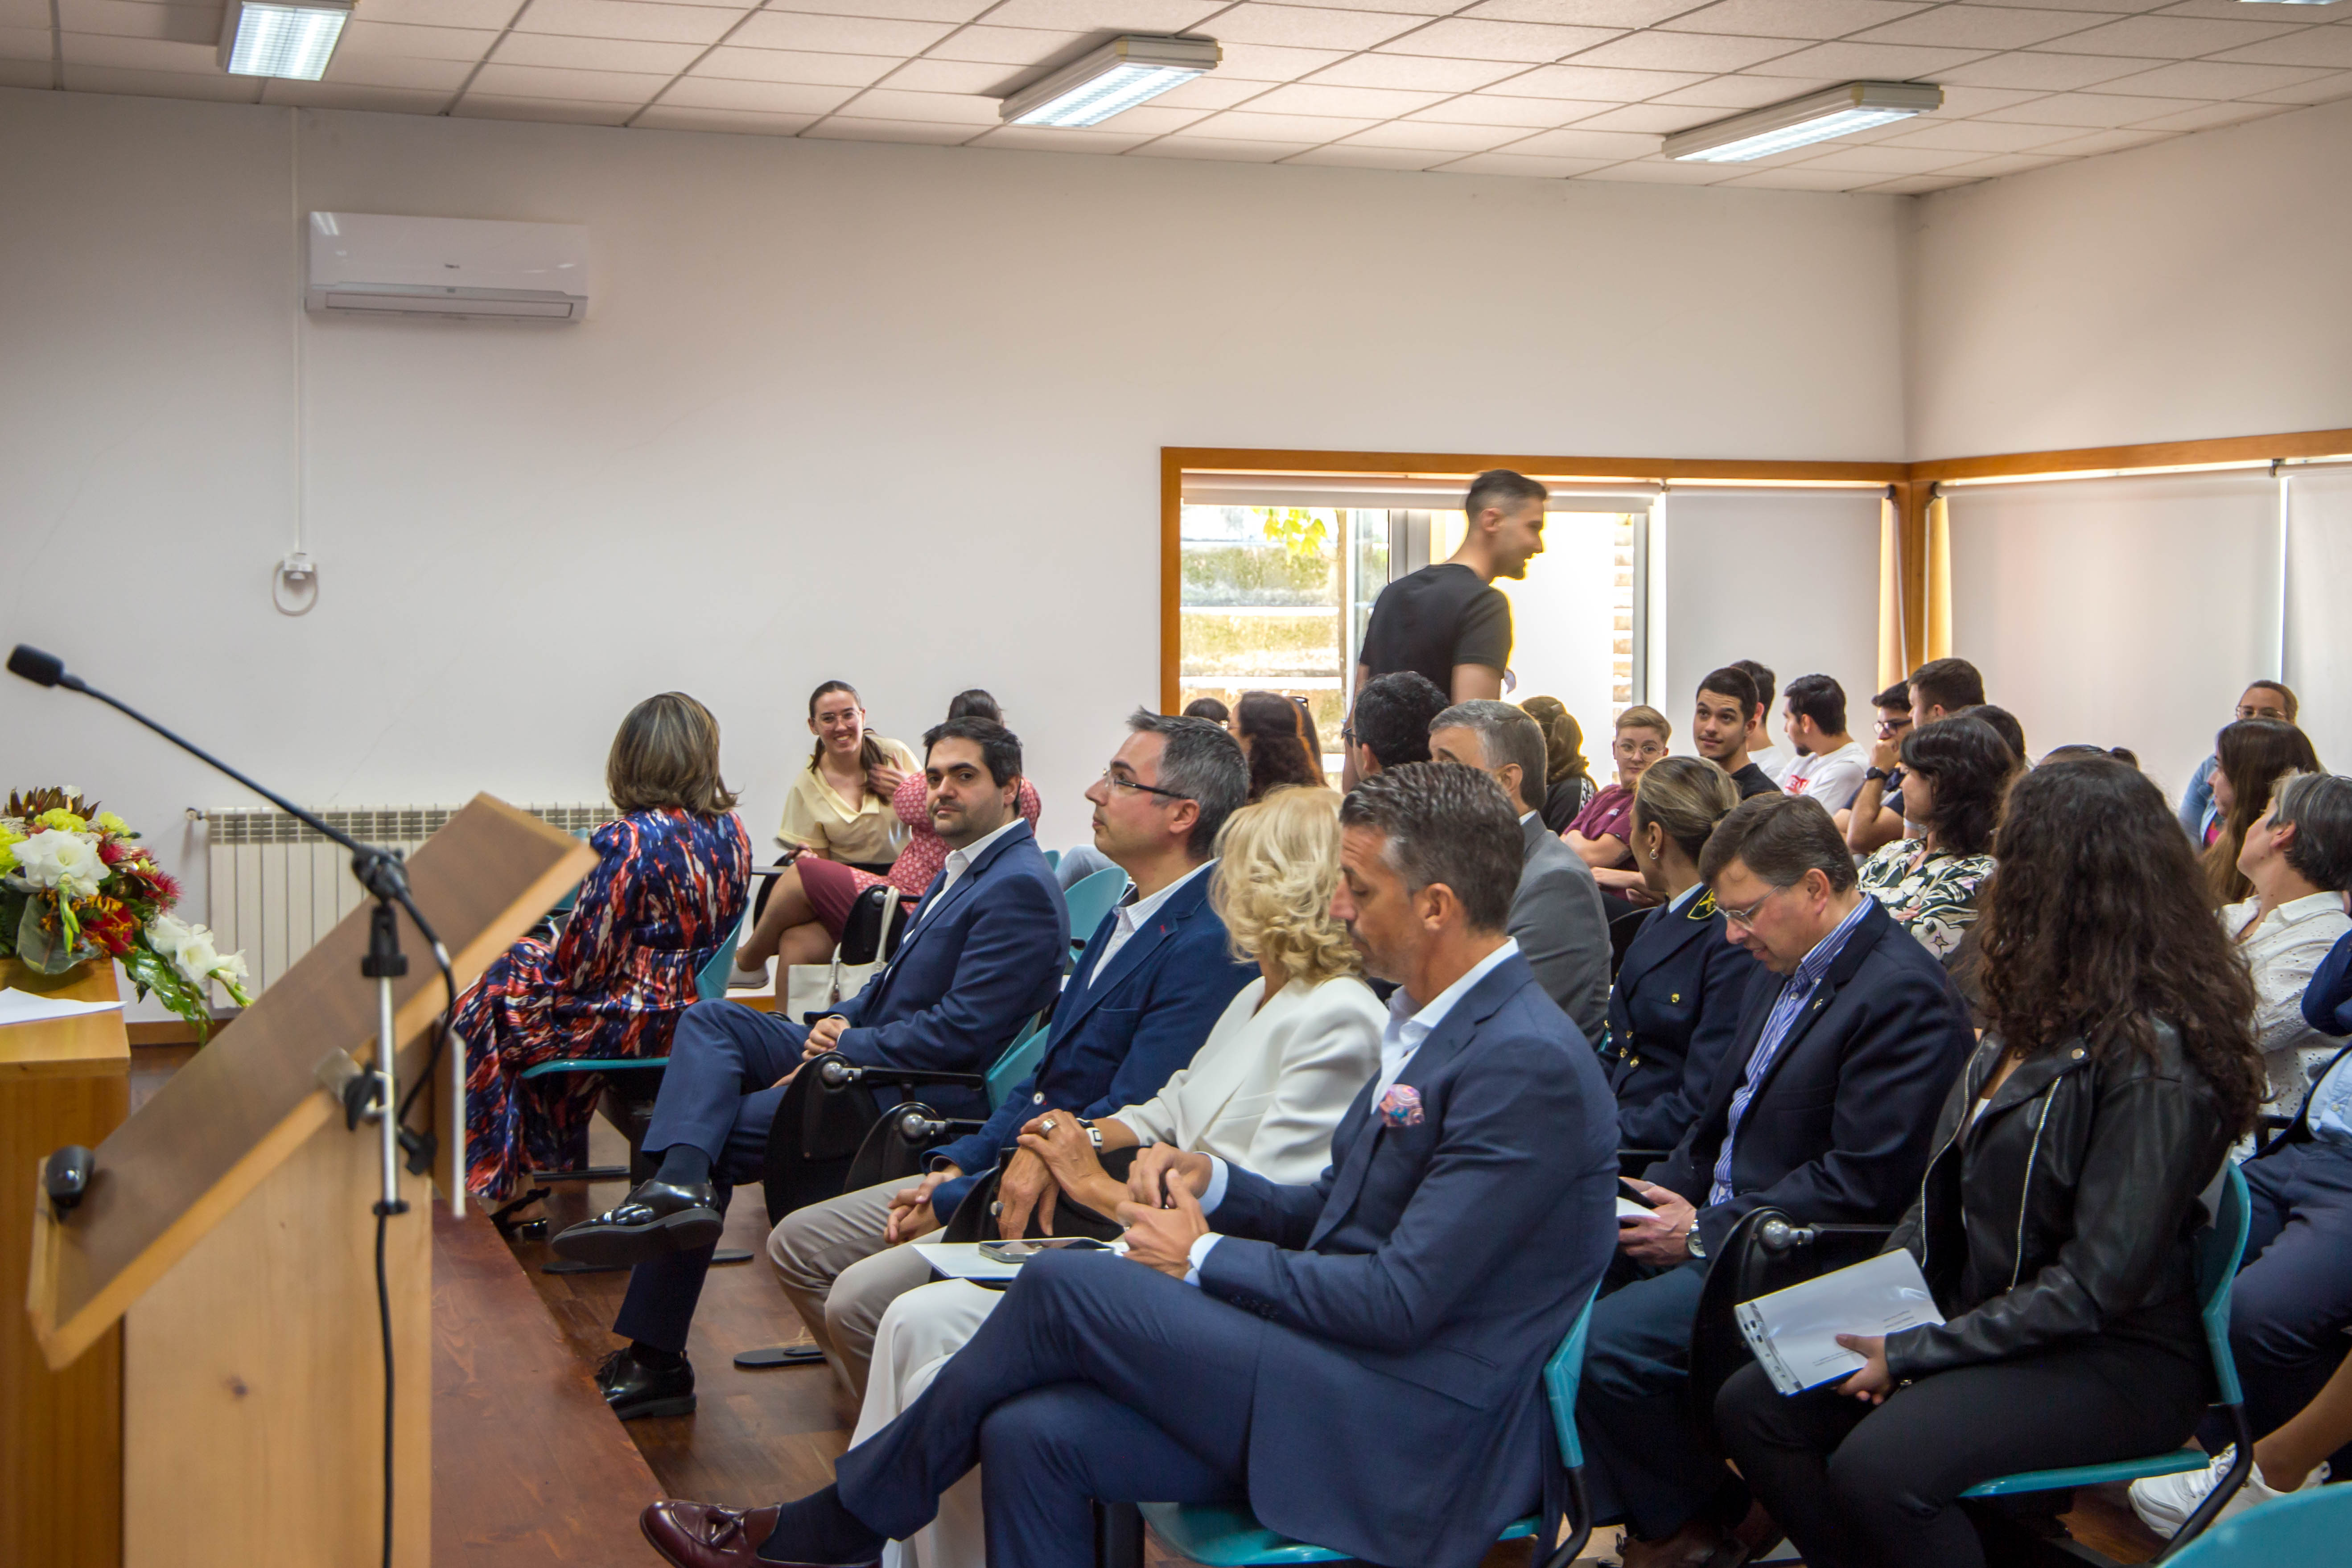 Sessão Comemorativa do 9.º Aniversário do ISCE Douro